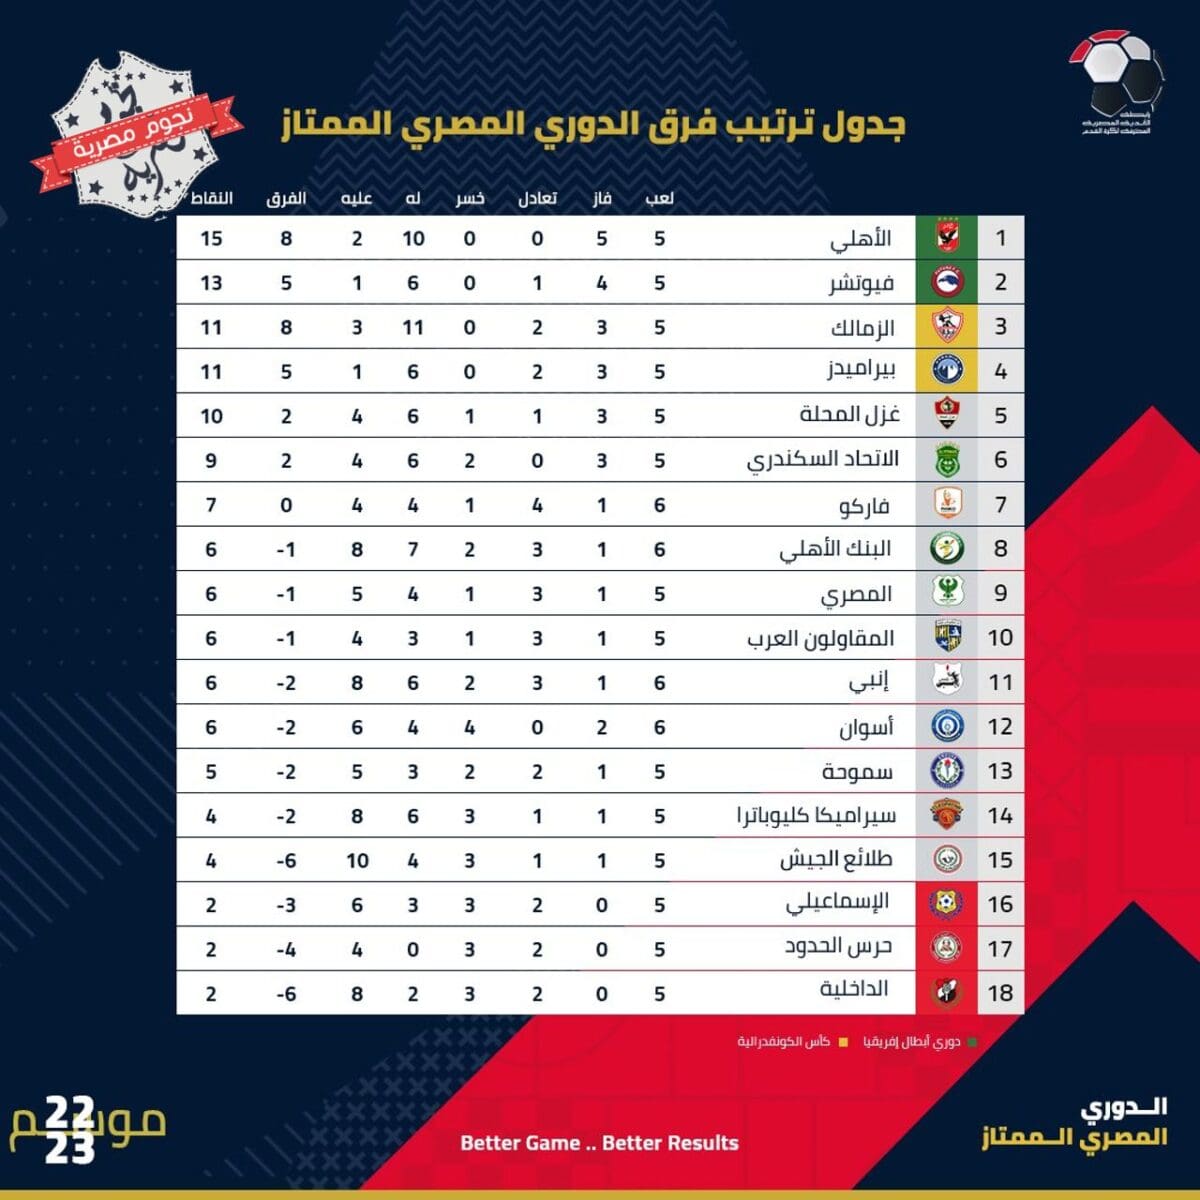 جدول ترتيب الدوري المصري الممتاز موسم 2022_2023 قبل انطلاق المباريات المؤجلة اليوم الأحد 11 ديسمبر 2022